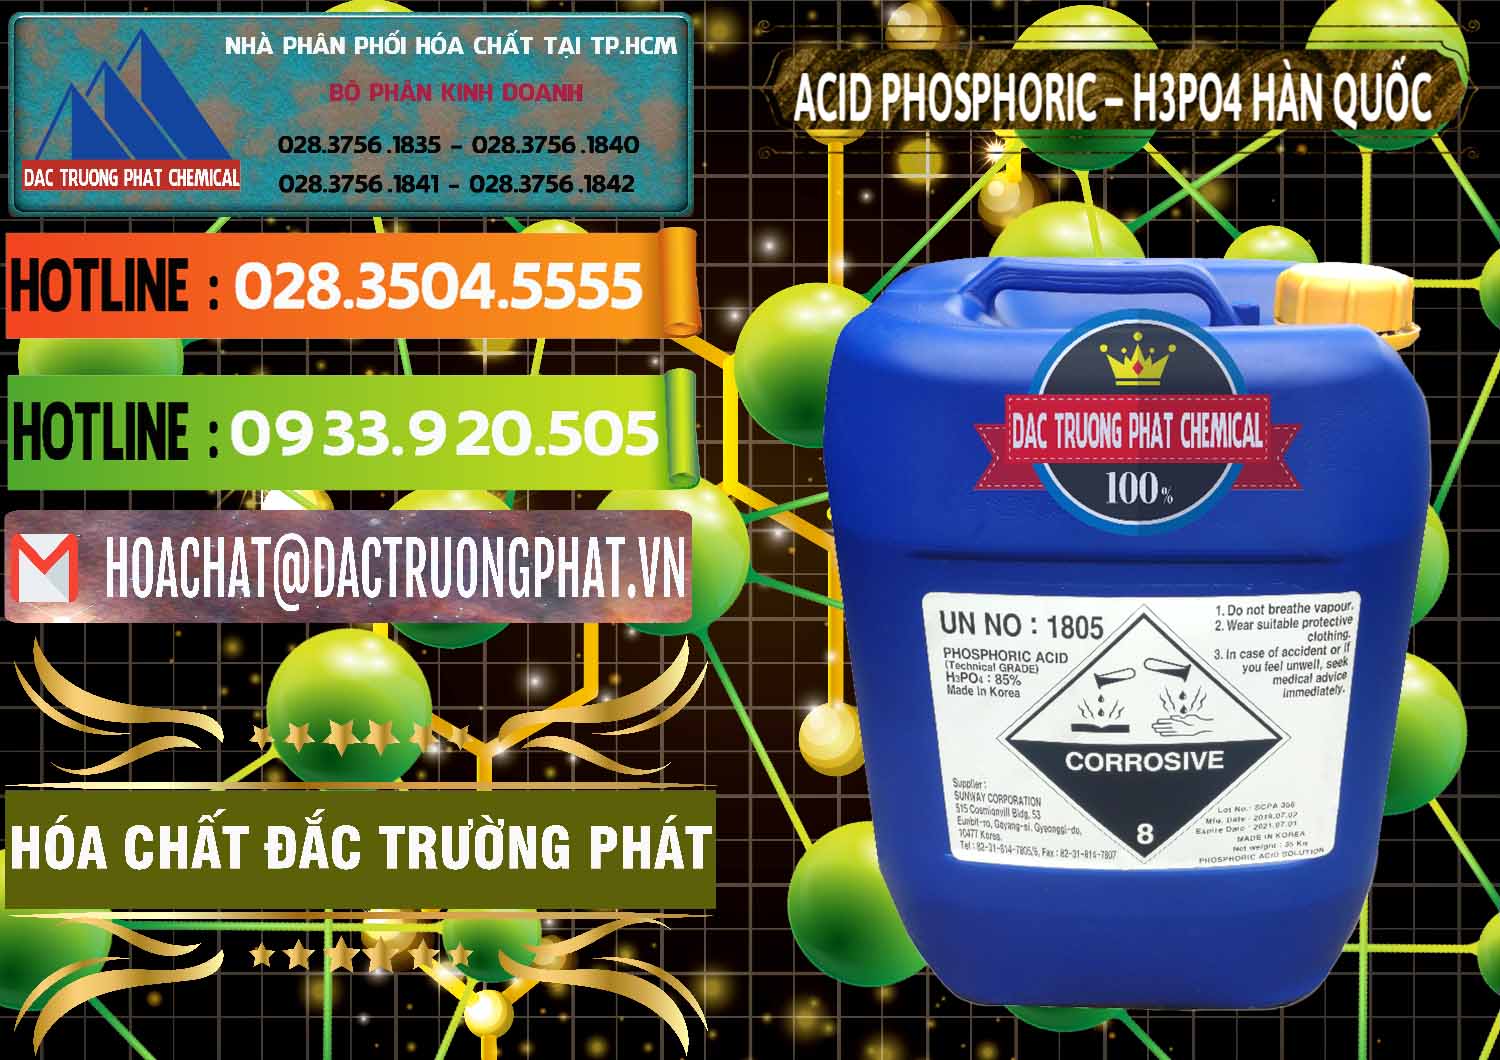 Chuyên phân phối & bán Acid Phosphoric – H3PO4 85% Can Xanh Hàn Quốc Korea - 0016 - Chuyên phân phối ( kinh doanh ) hóa chất tại TP.HCM - cungcaphoachat.com.vn